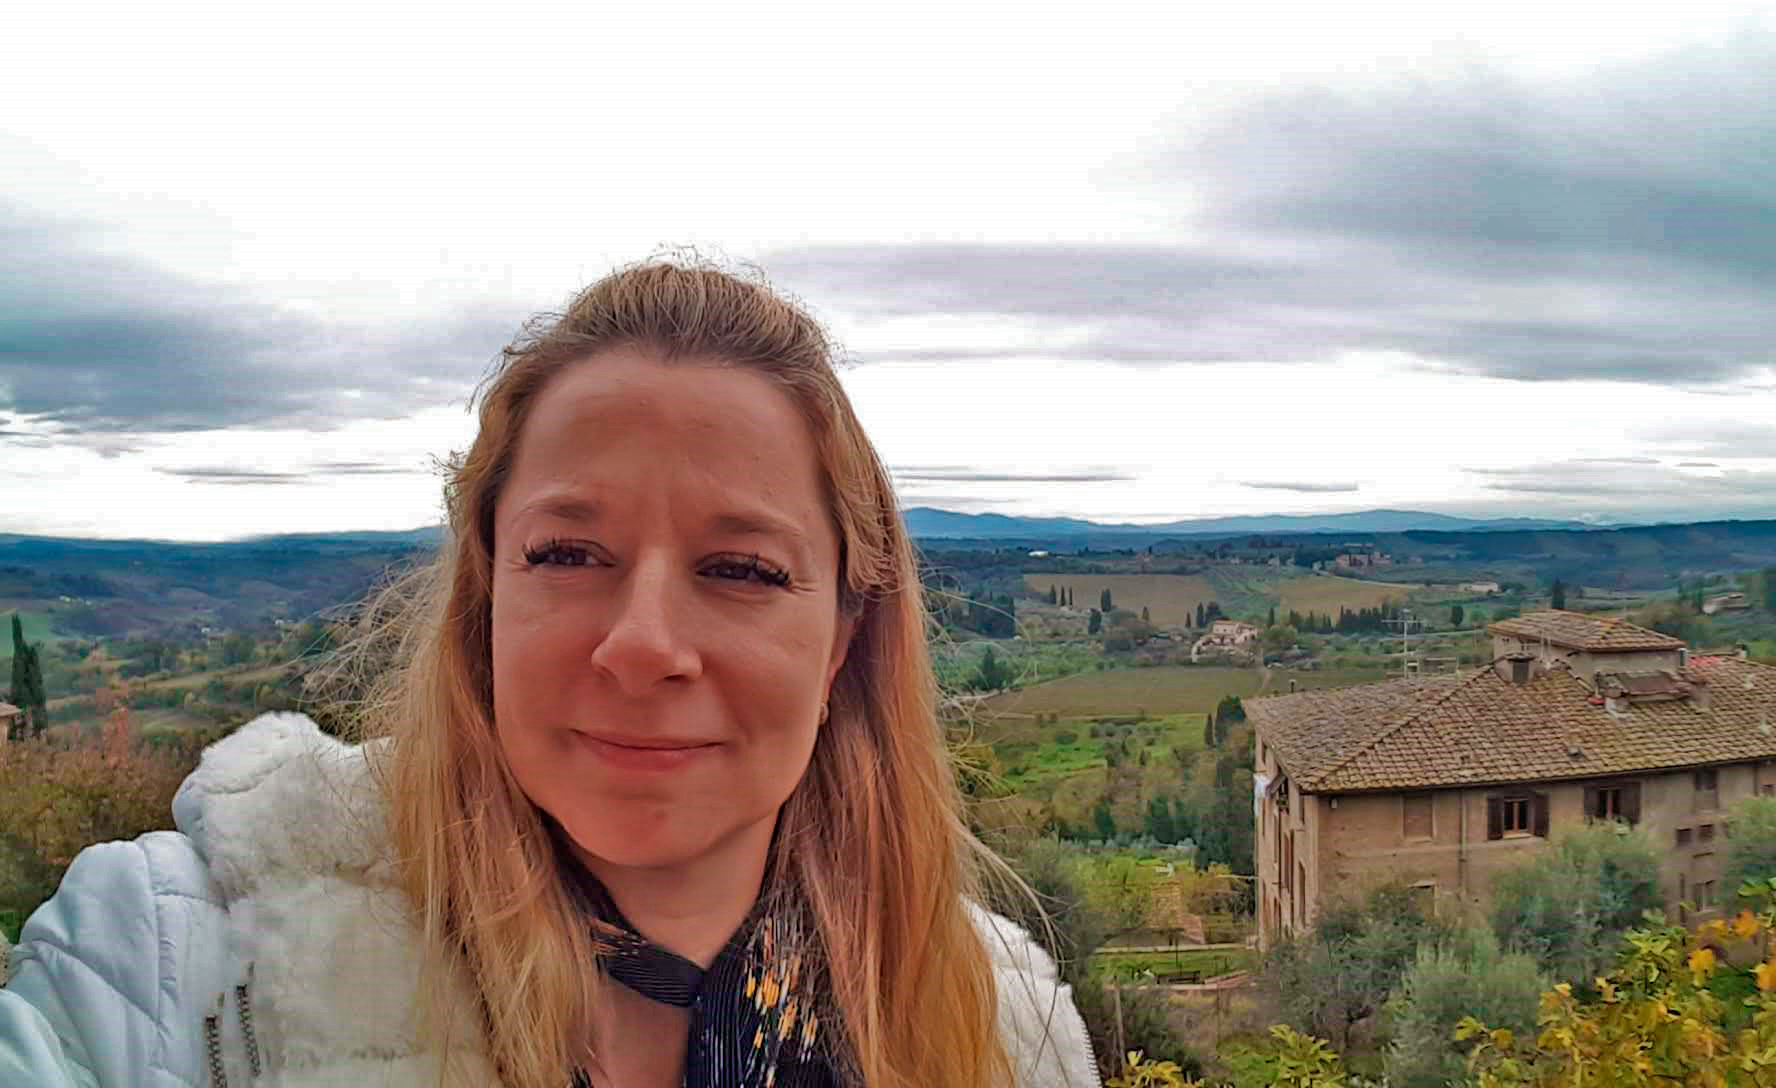 Minha filha Flavia em uma selfie na Toscana com vista panorâmica